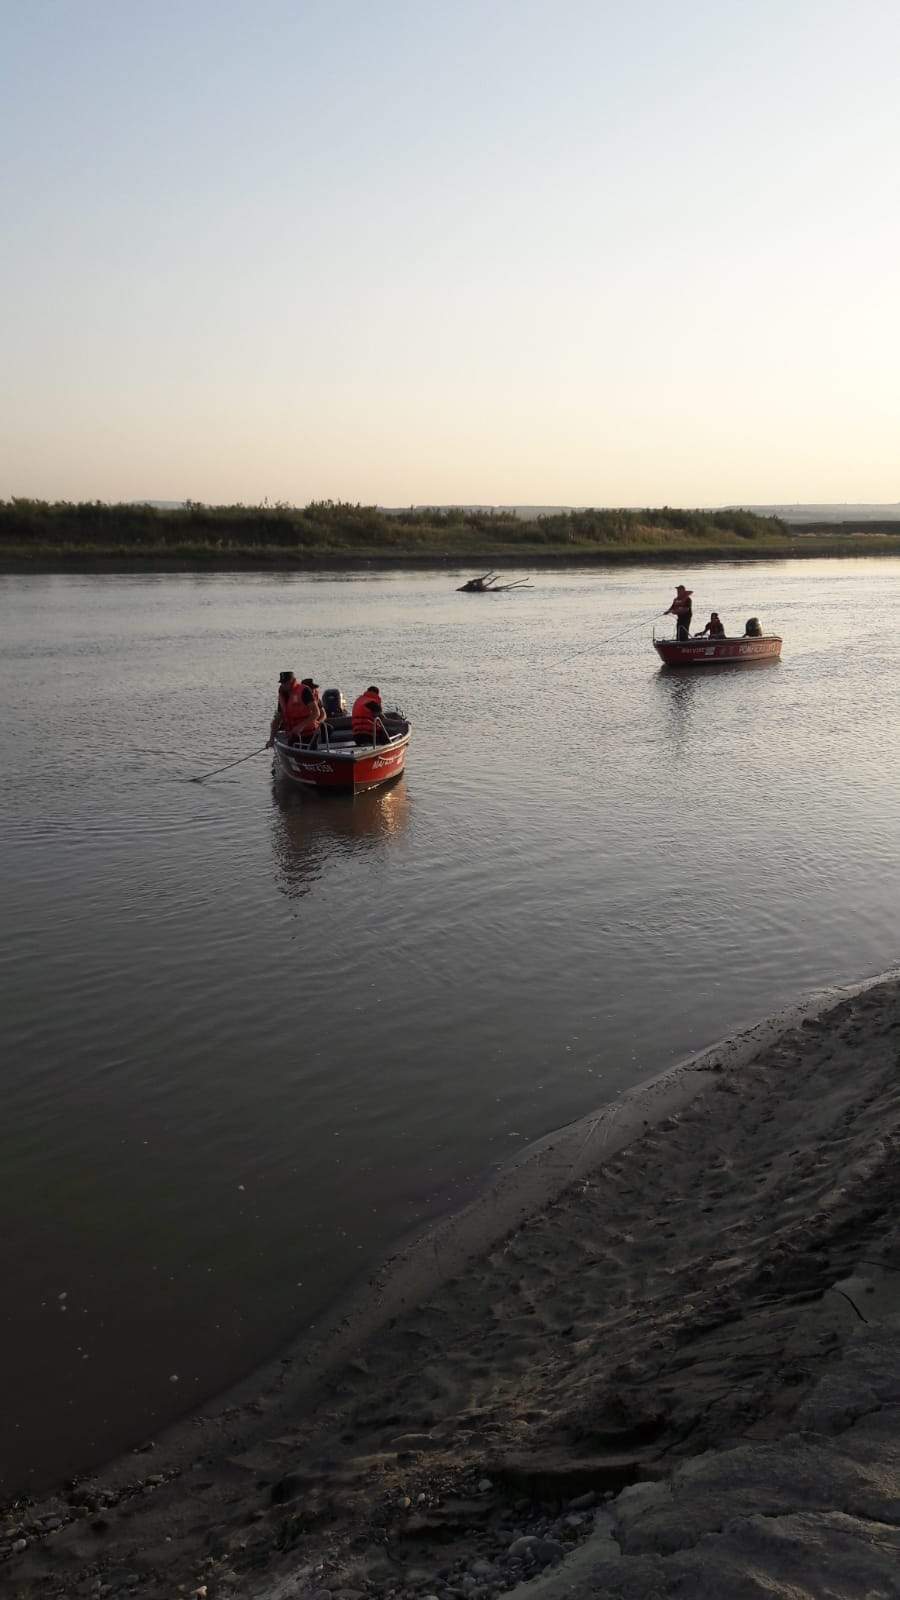 Cine sunt cei cinci adolescenți înecați în Siret, seara trecută. Doi dintre aceștia erau frați